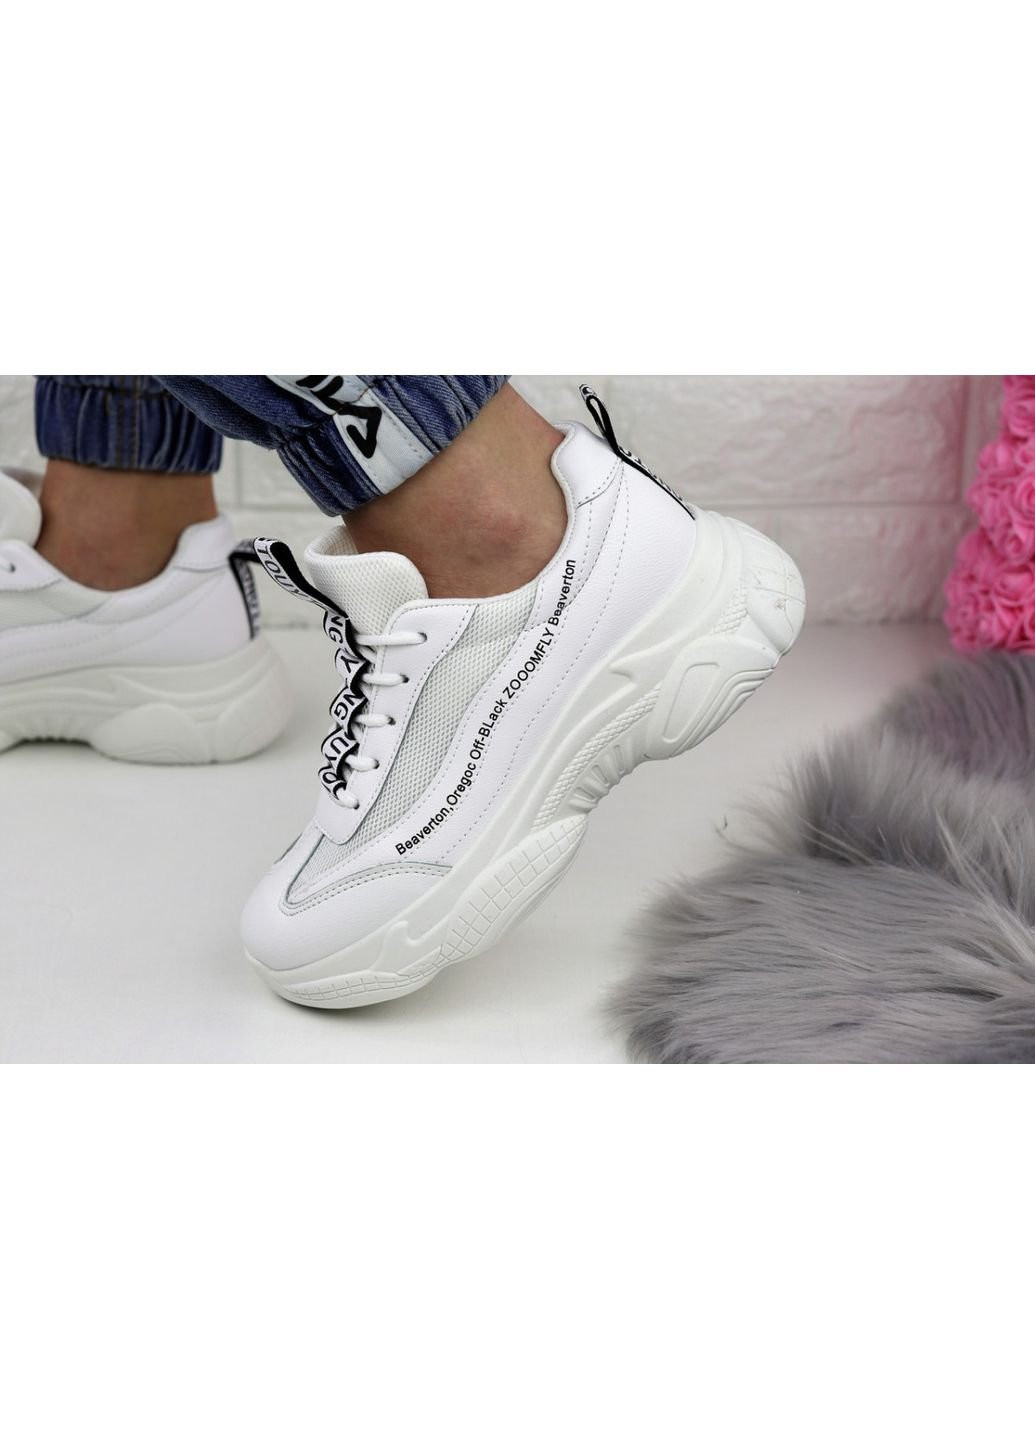 Белые демисезонные женские кроссовки tinoa 1151 36 23 см белый Fashion